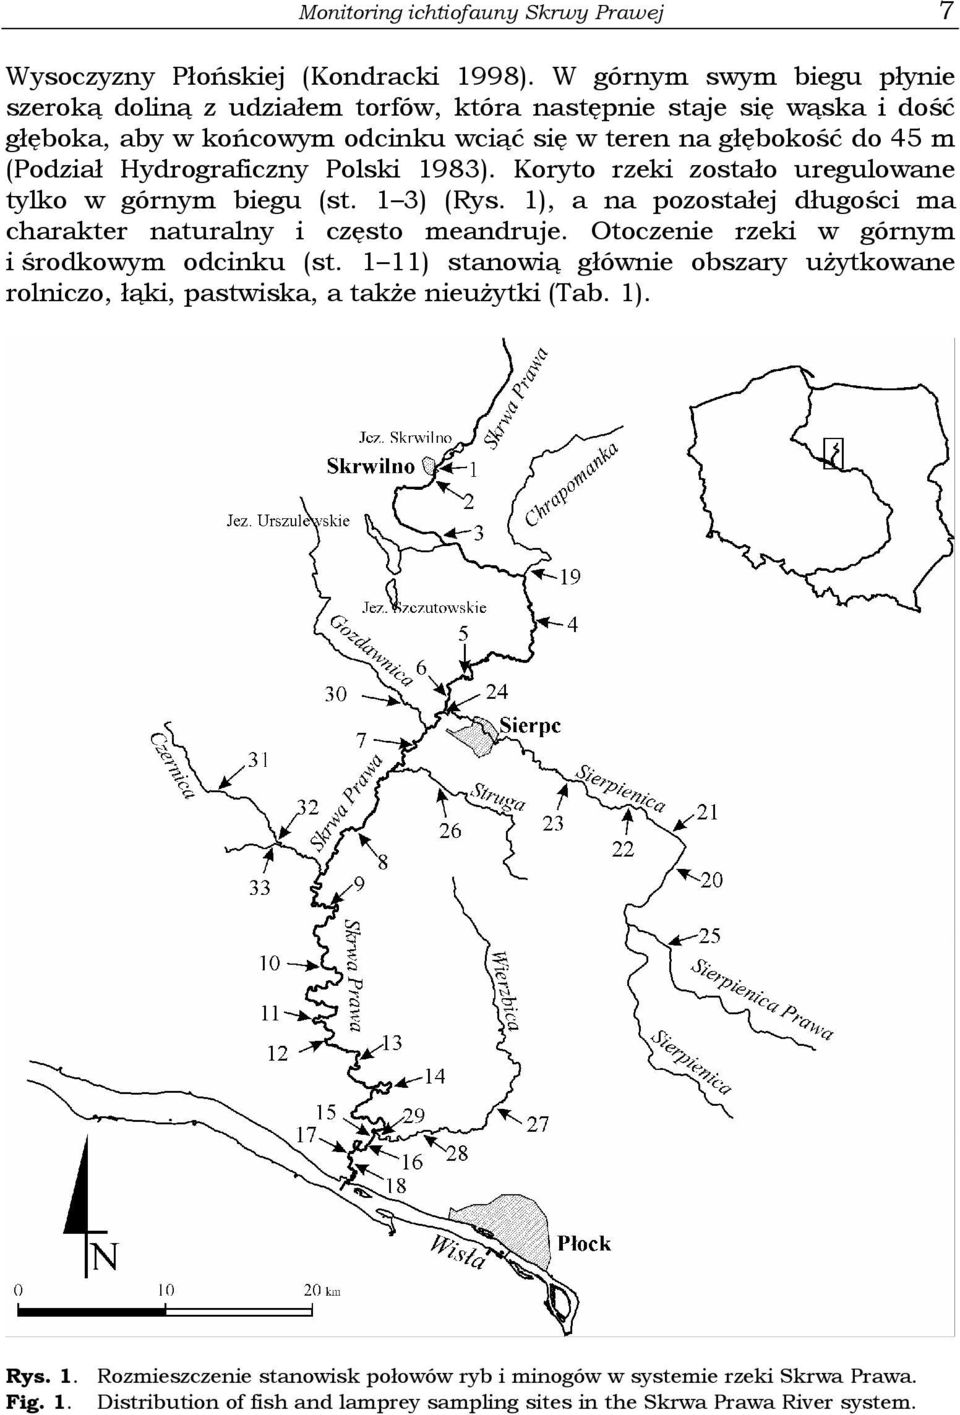 Hydrograficzny Polski 1983). Koryto rzeki zostało uregulowane tylko w górnym biegu (st. 1 3) (Rys. 1), a na pozostałej długości ma charakter naturalny i często meandruje.